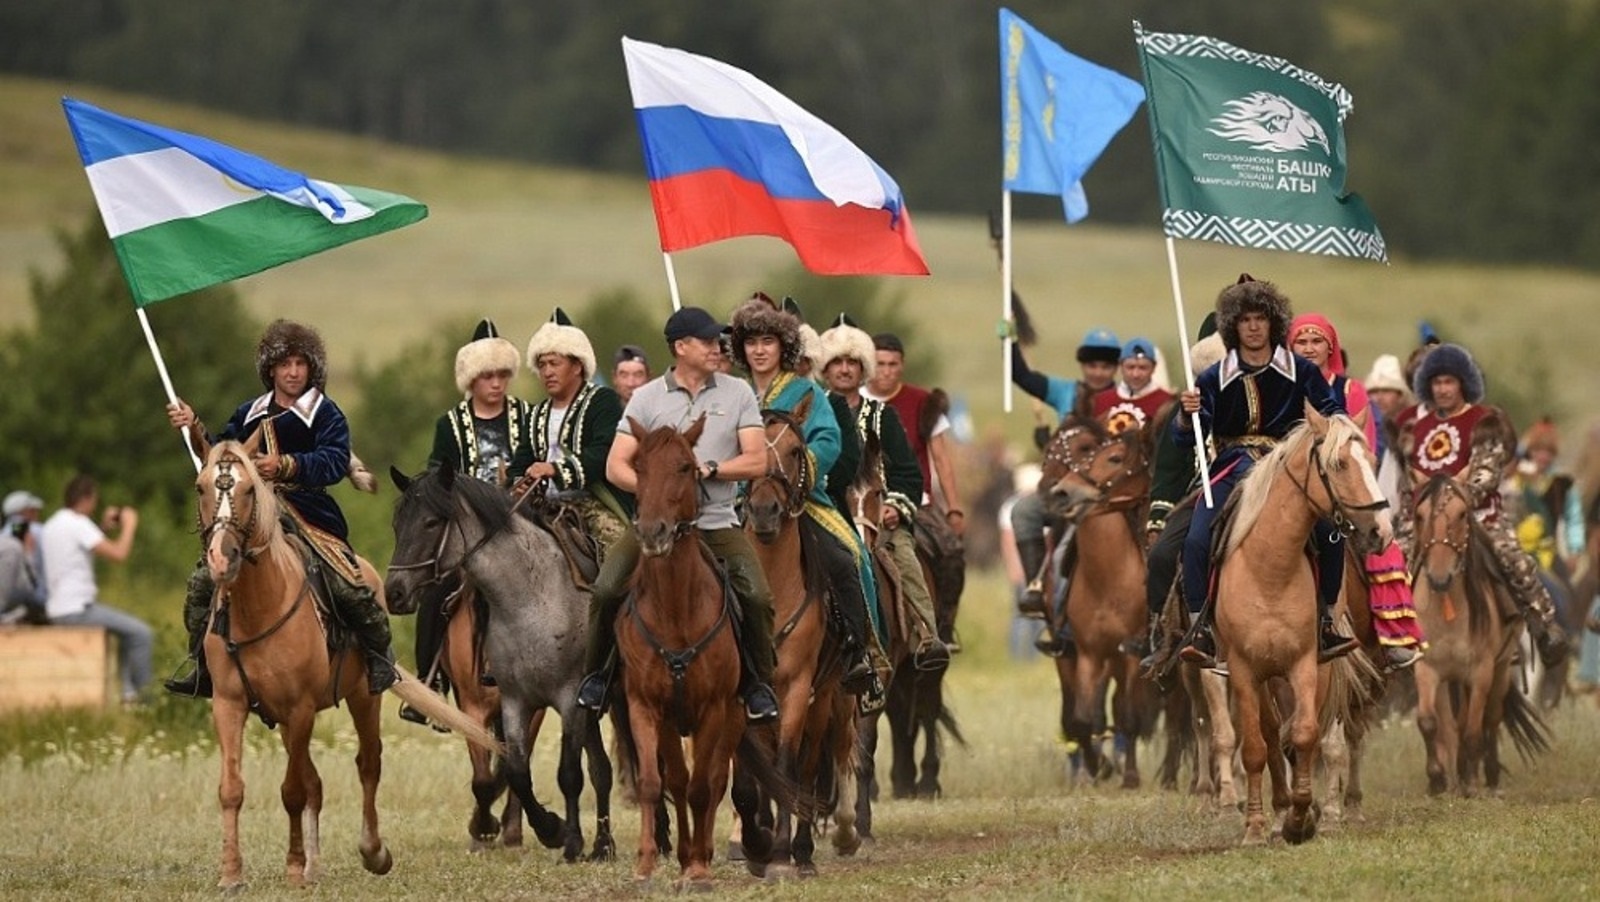 Башкирия на коне: 10 любопытных фактов о республиканском фестивале «Башҡорт аты»